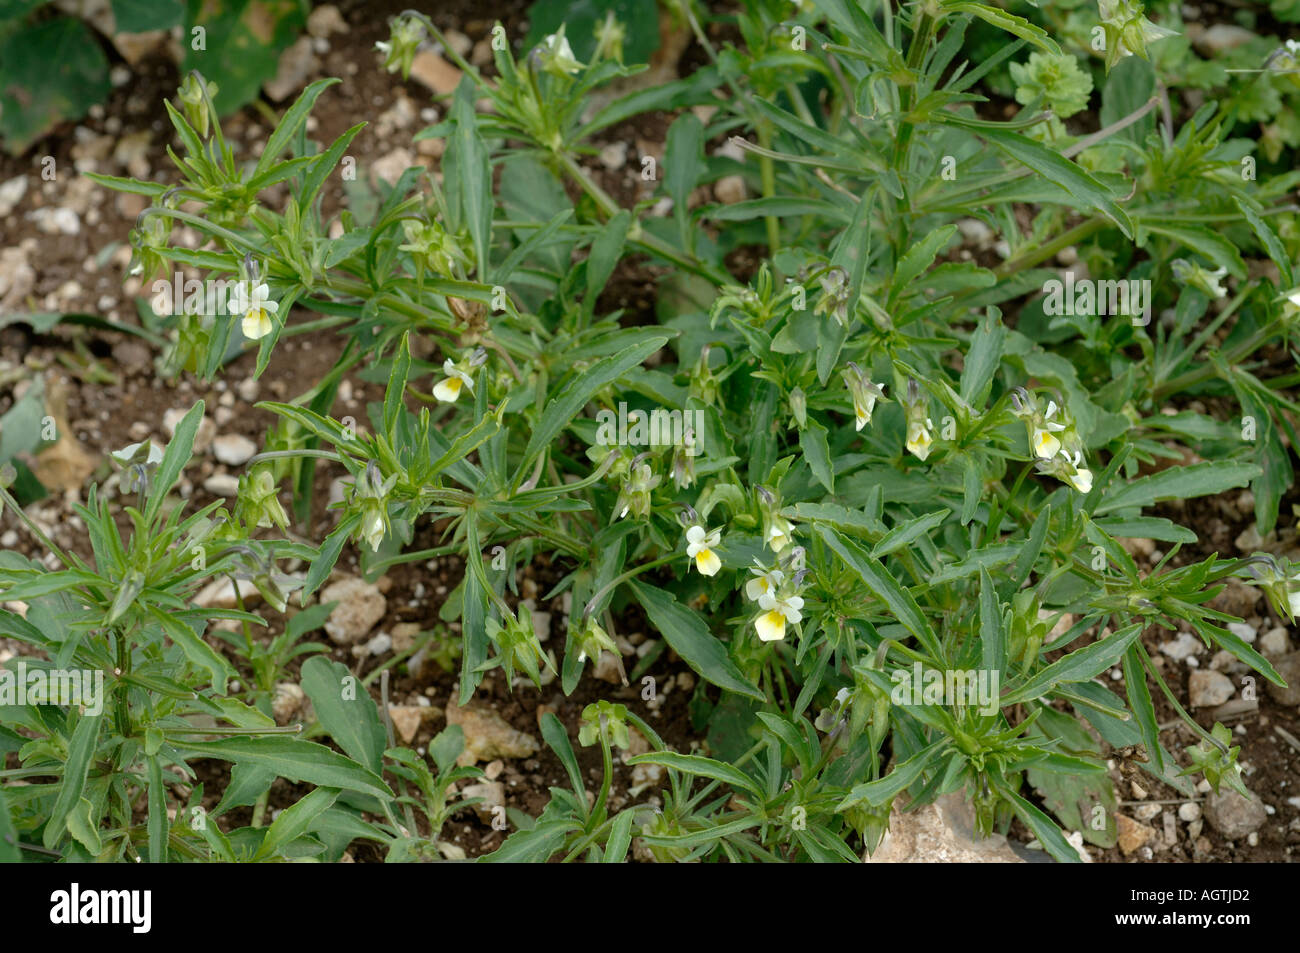 Campo pansy Viola arvensis planta con flores Foto de stock